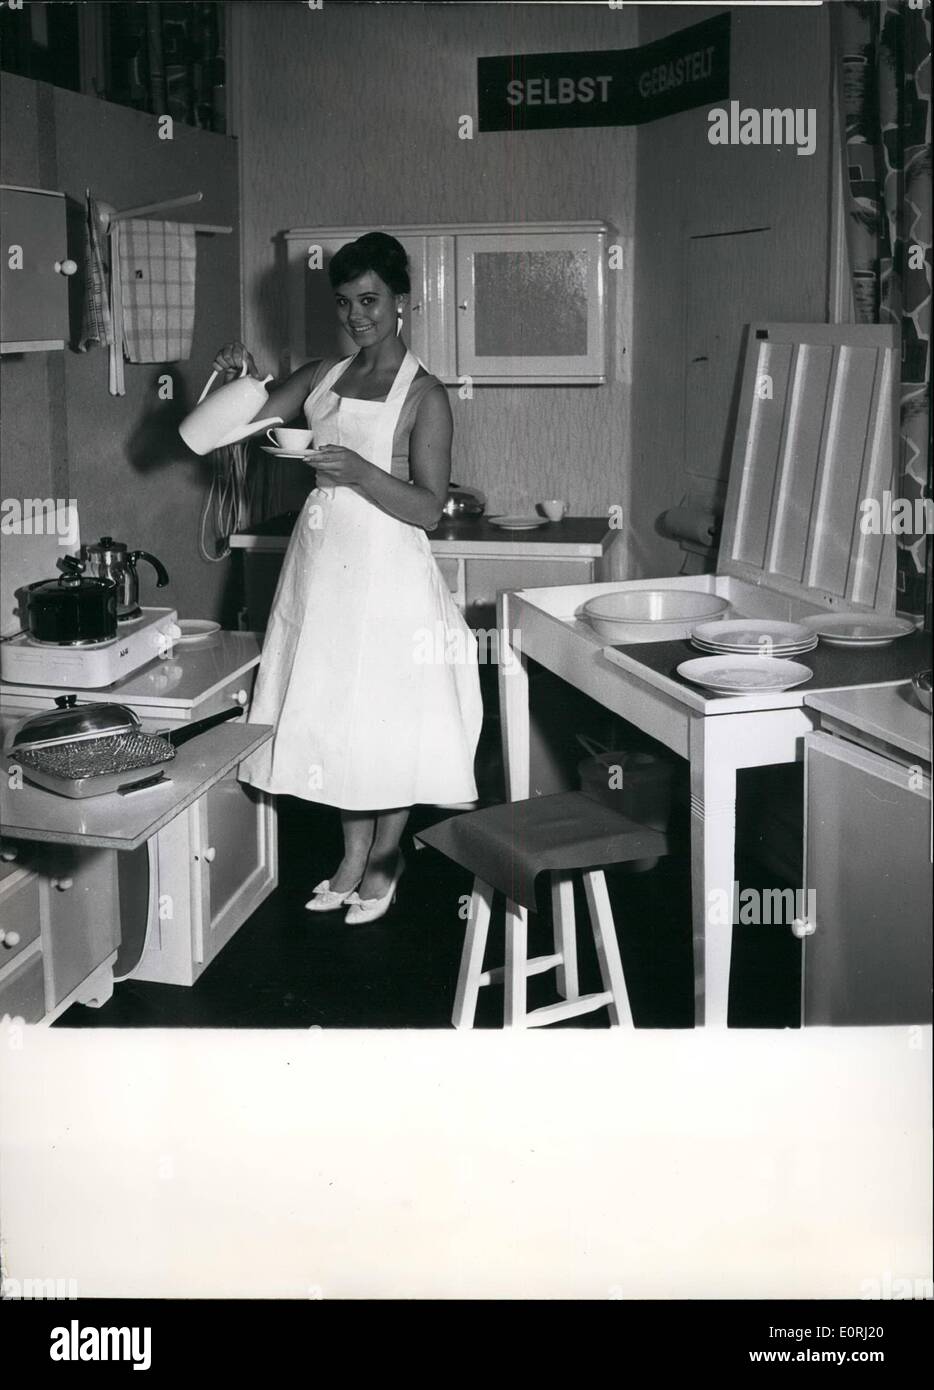 Nov. 11, 1959 - self made cucina per 300 Marka: il consumatore al centro nelle loro camere di Amburgo ha mostrato una self made in cucina. Tutte le parti di essa sono state quasi del tutto inutili prima, ma con colori luminosi e agili mani, vecchi tavoli e ripiani si è trasformato in un accogliente e comodo di cucina. Acquistando le vecchie parti costo 60 marchi (circa &pound;5) e le spese per la stampa a colori e di pagare per gli operai erano 240 segna circa &pound;20. Ciò dimostra che gli sposi non deve spendere 1000 segni per Nizza mobili per cucina Foto Stock